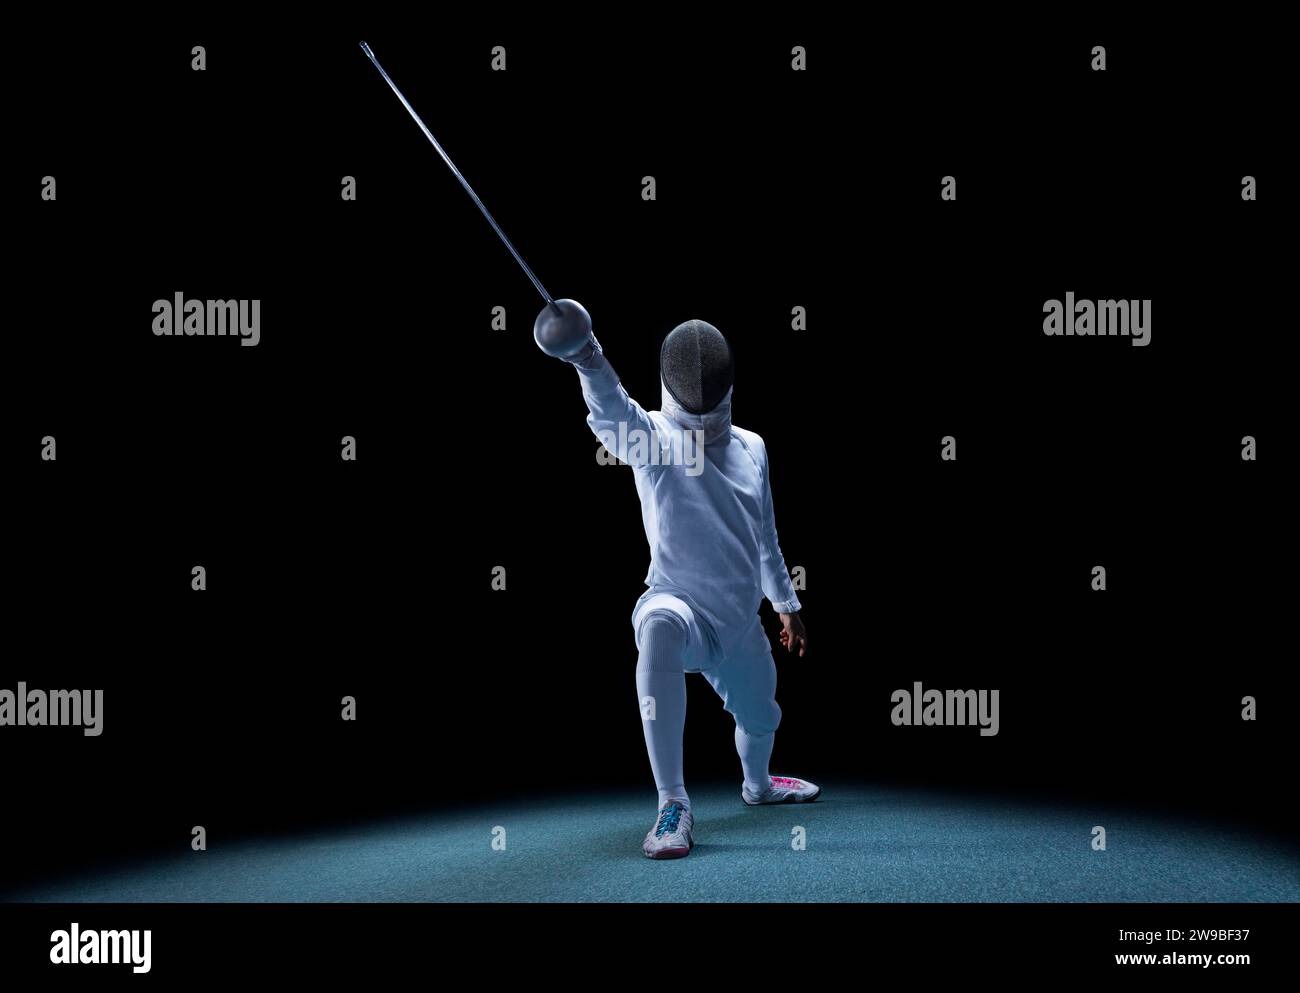 Der Fechter bewegt sich mit einem Schwert in der Hand. Sportkonzept. Gemischte Medien Stockfoto